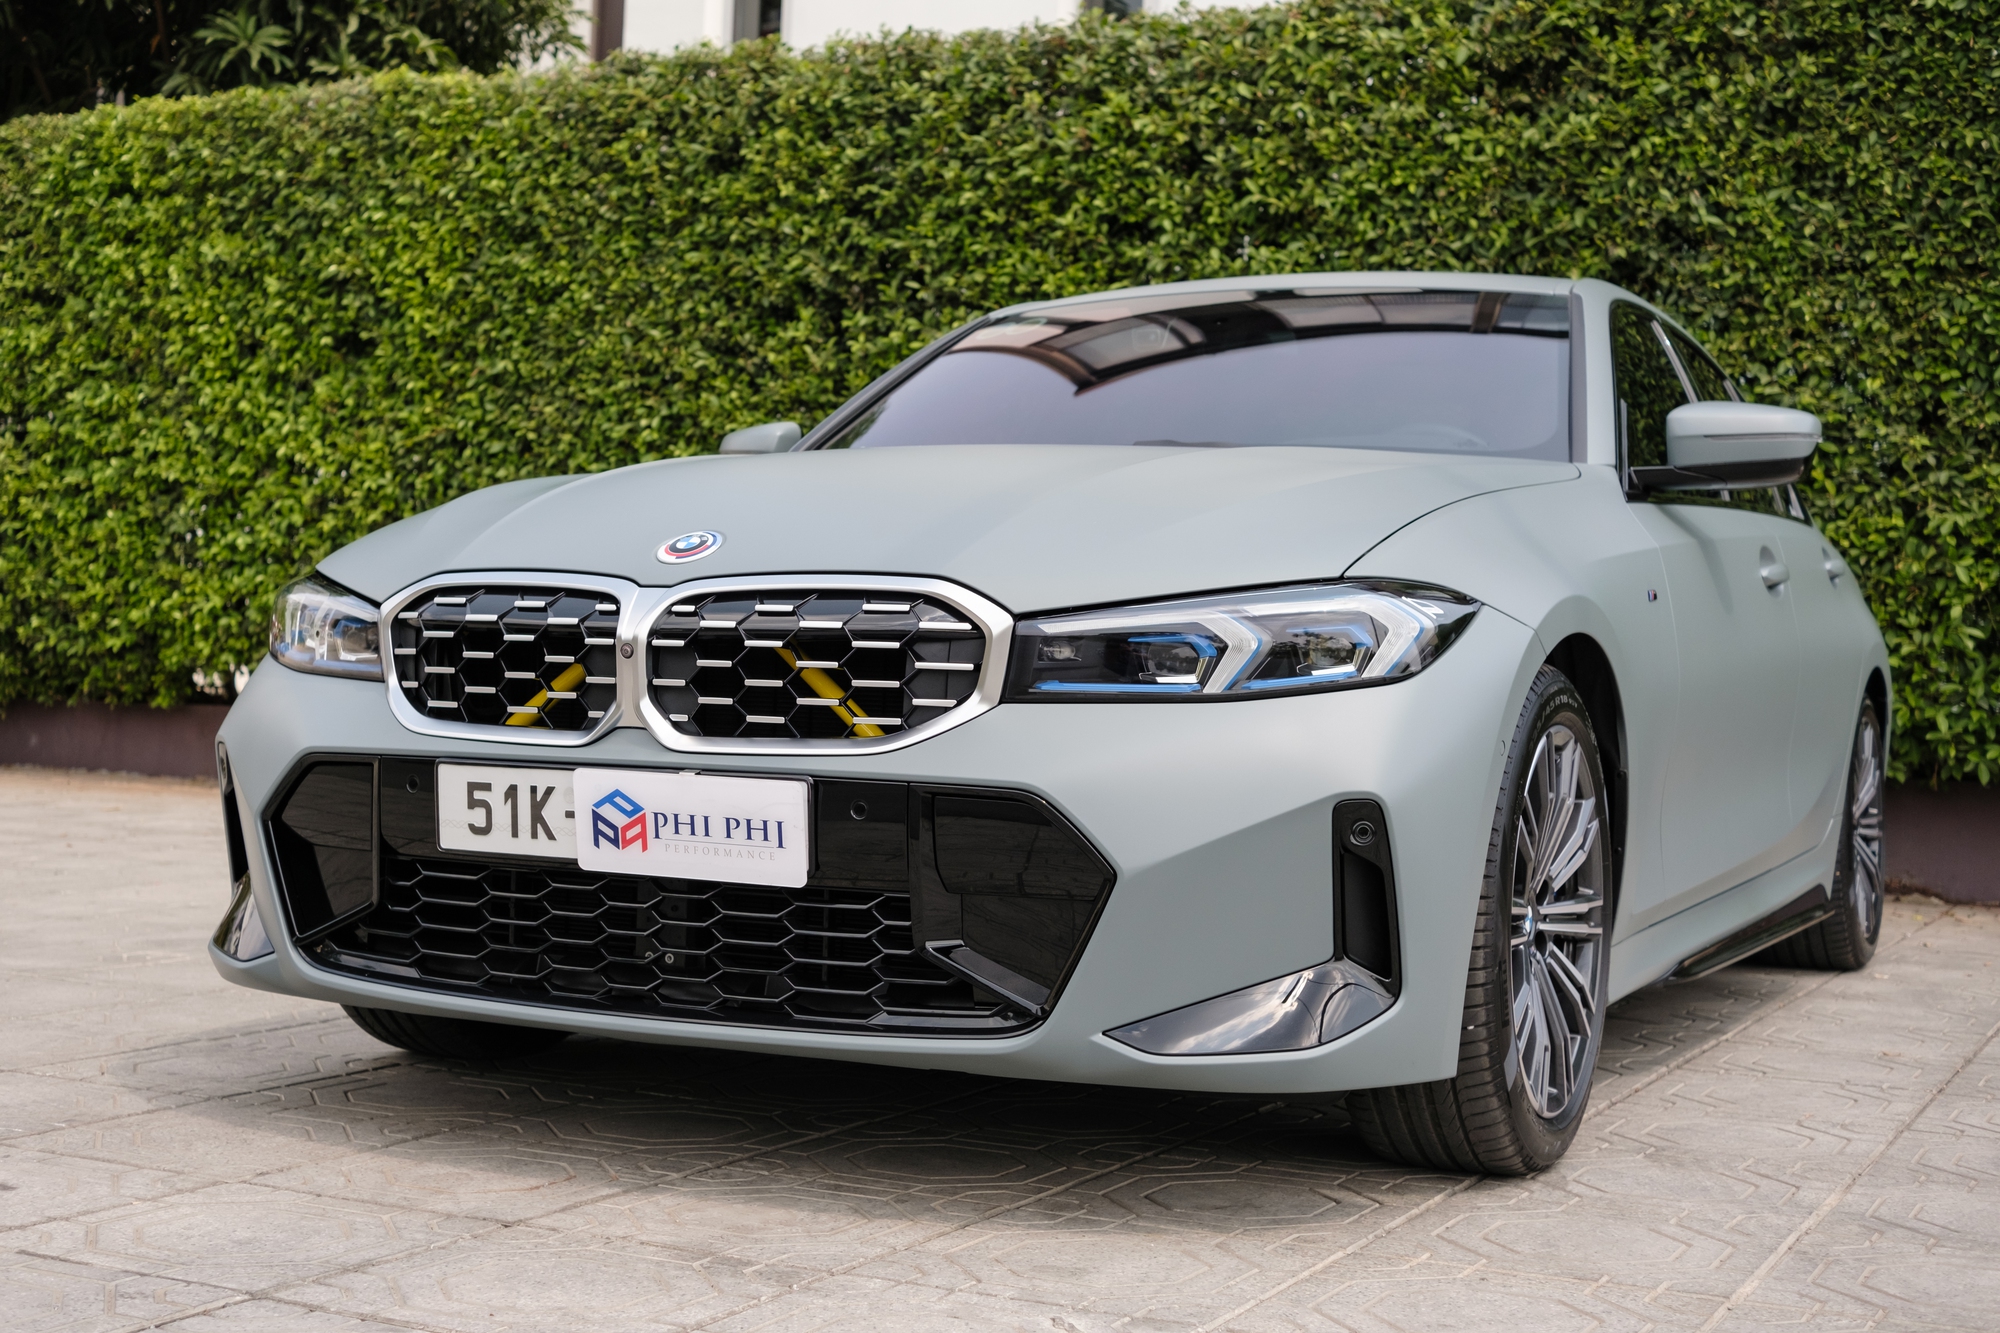 Thợ Việt lột xác BMW 330i cũ thành bản mới trong 2 ngày: Toàn hàng chính hãng, hết 140 triệu đồng  - Ảnh 8.